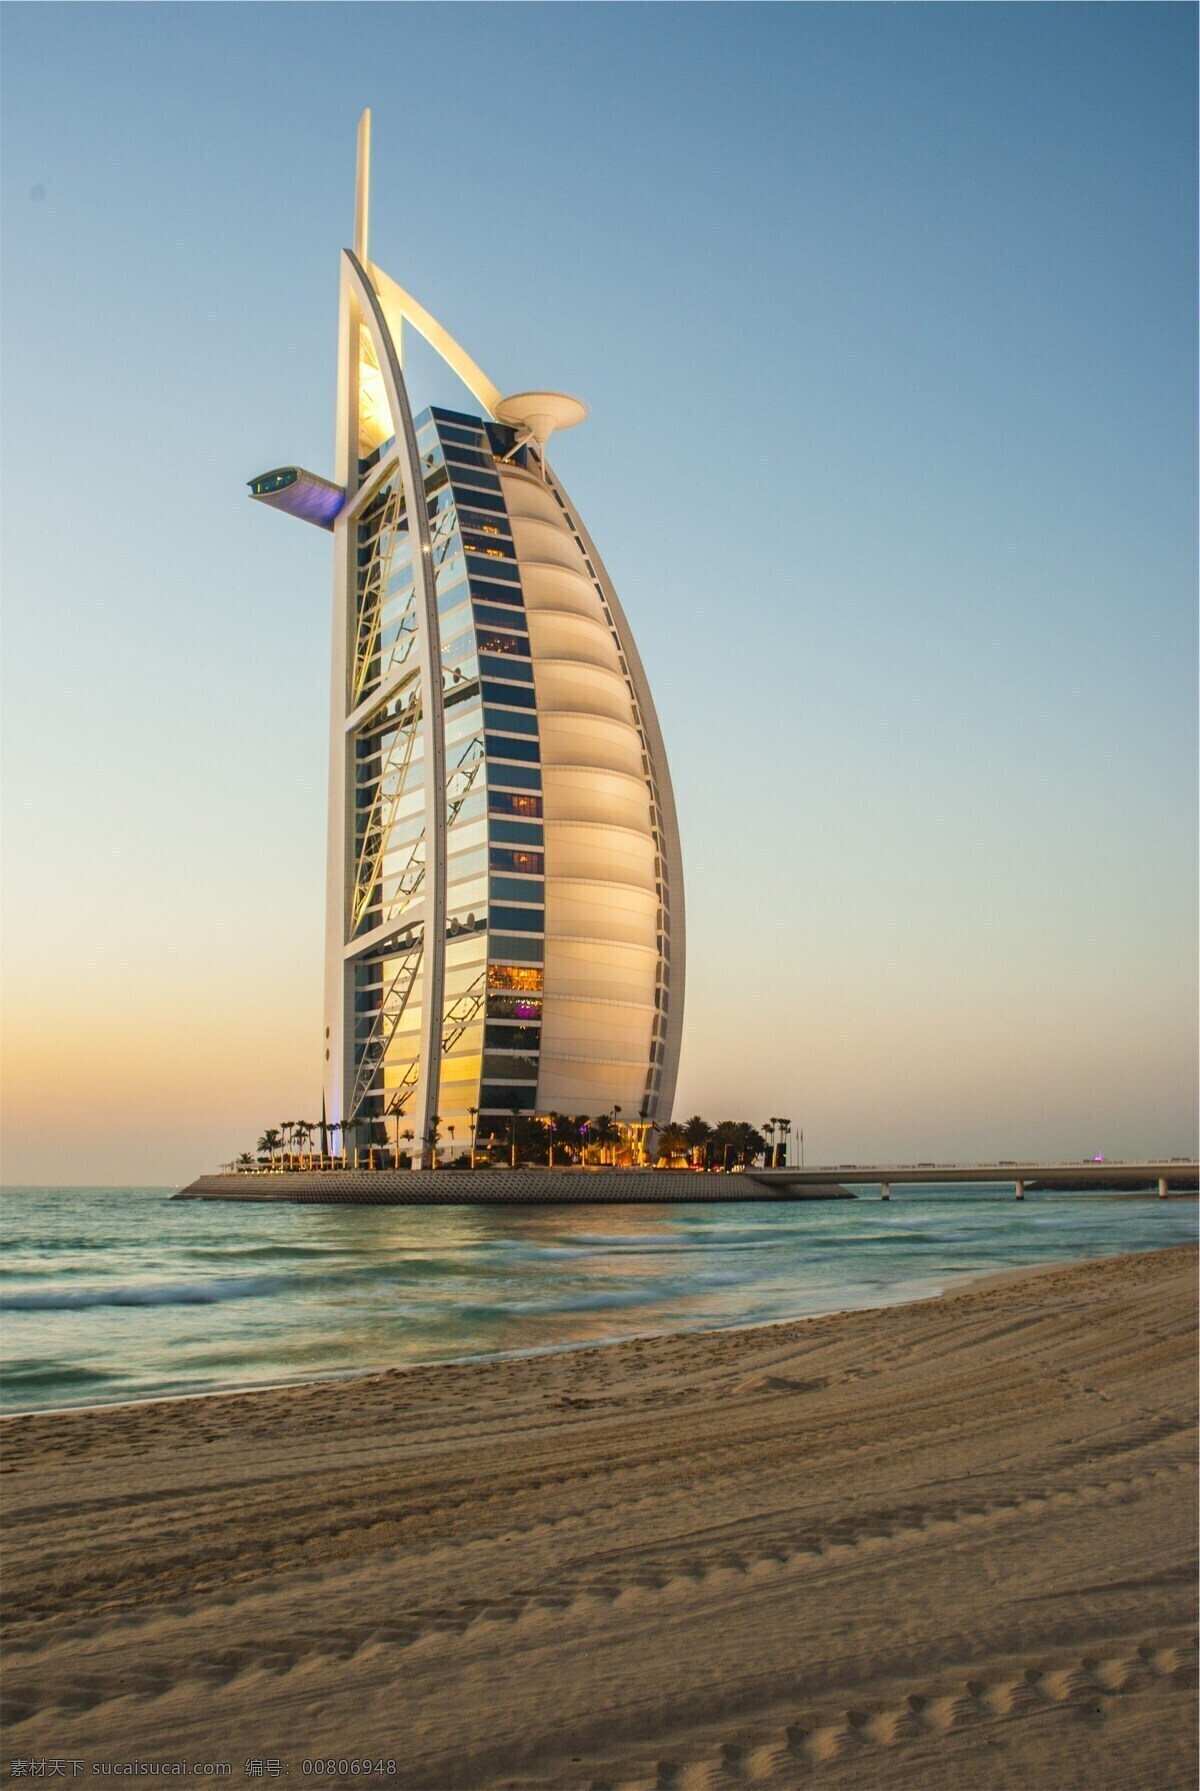 迪拜帆船酒店 迪拜 酒店 帆船酒店 海滩 蓝天 旅游摄影 国外旅游